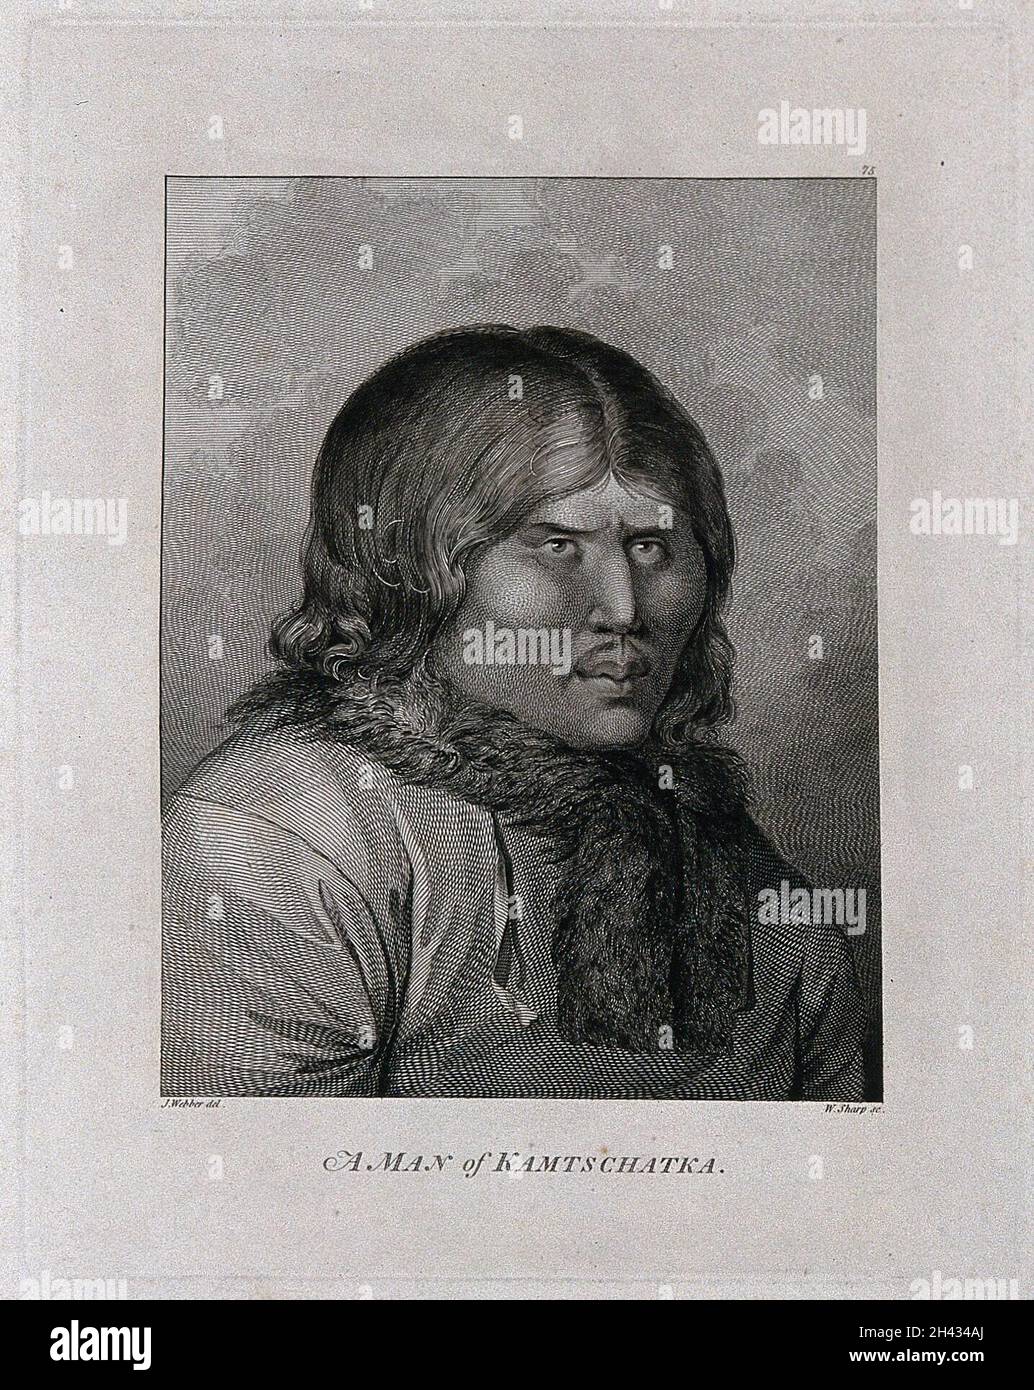 Un uomo di Kattschatka (Russia); incontrato dal capitano Cook nel suo terzo viaggio (1777-1780) incisione di W. Sharp dopo J. Webber, 1780/1785. Foto Stock